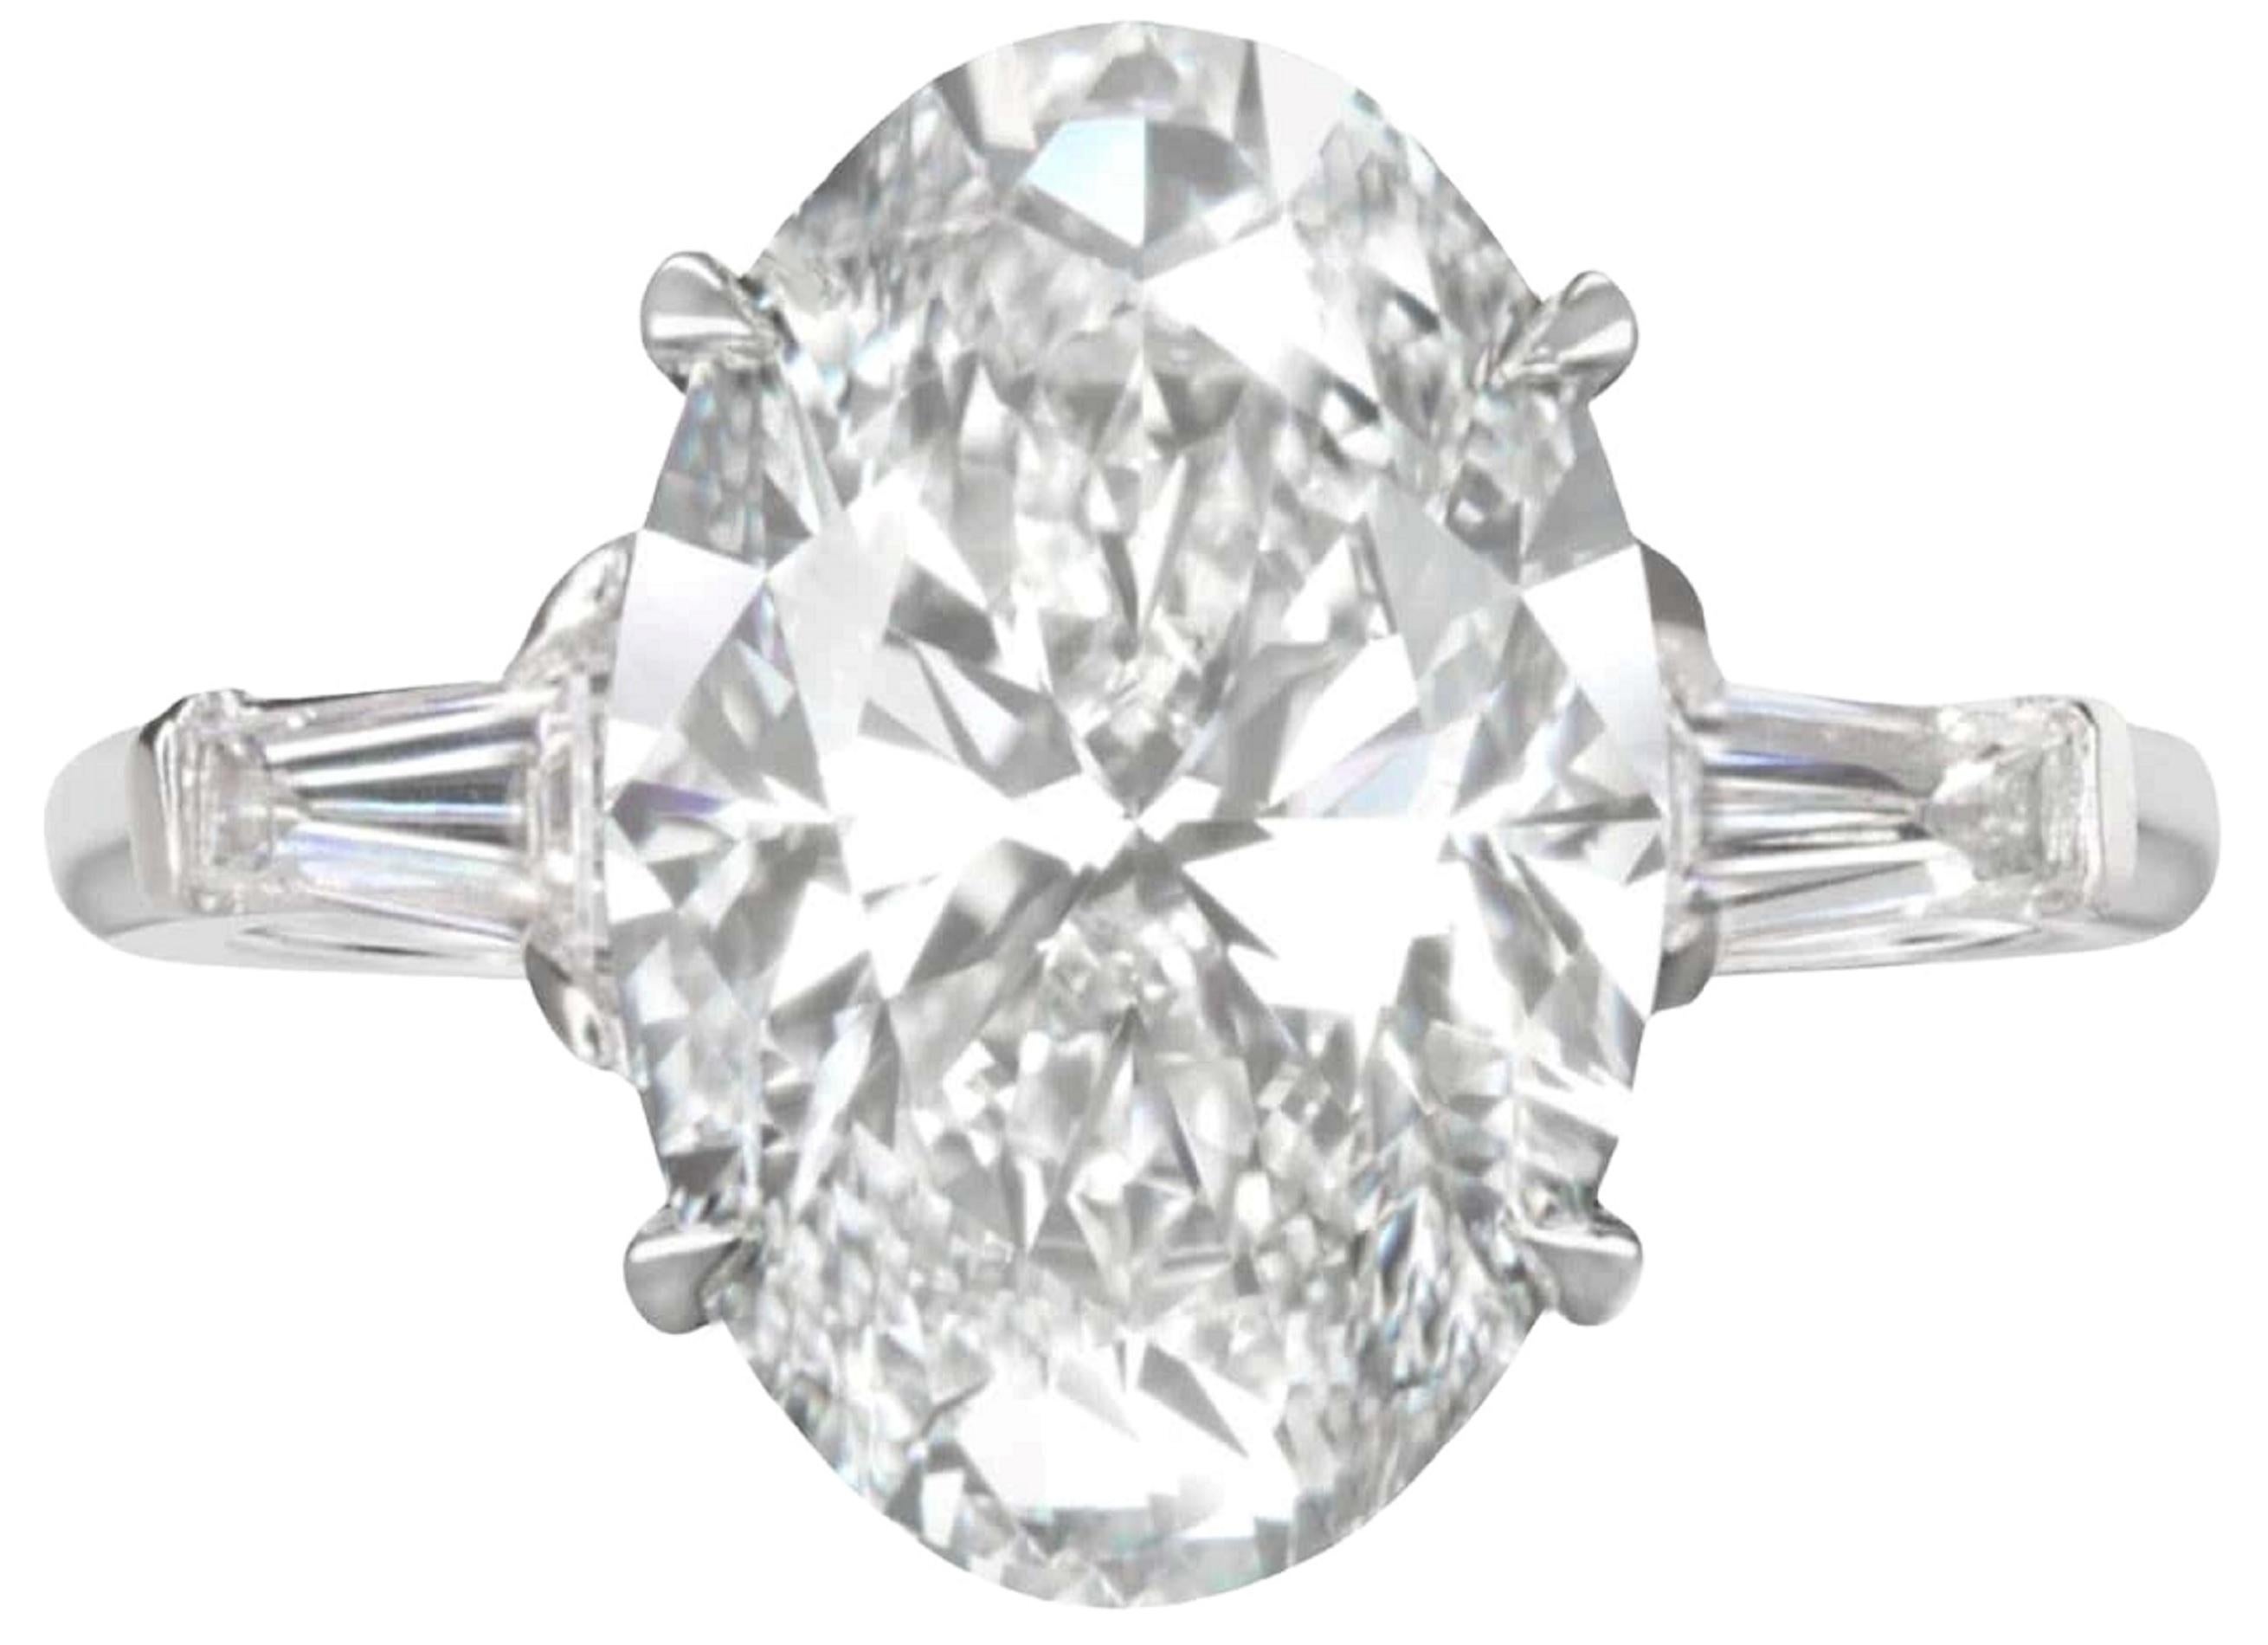 4ct oval diamond ring